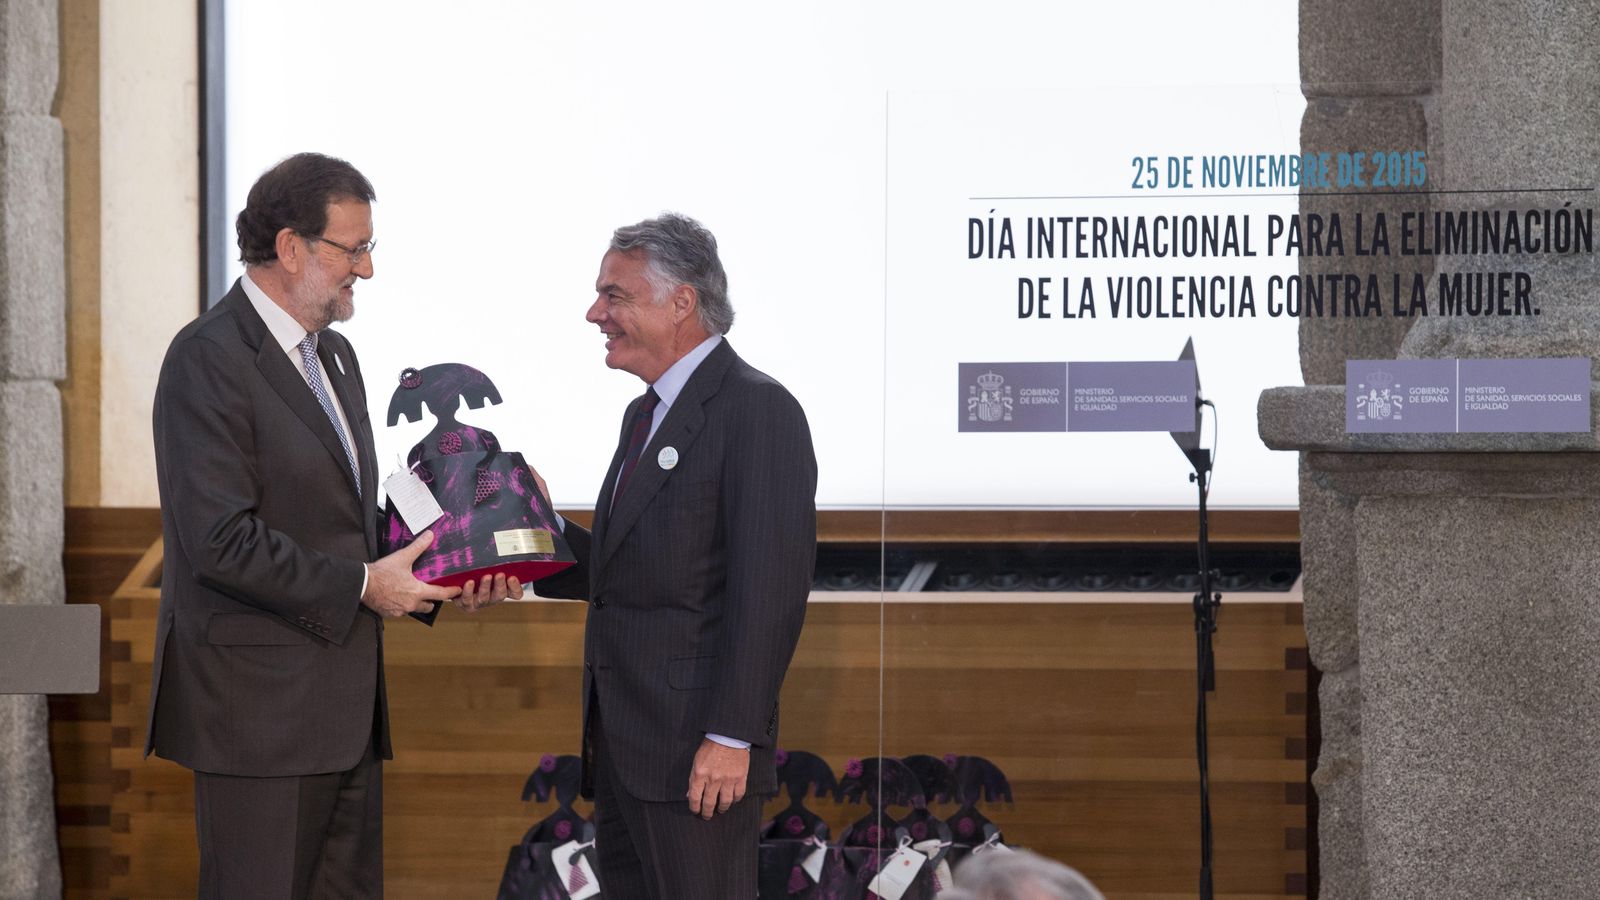 Foto: Mariano Rajoy, presidente del Gobierno, entrega el galardón a Ignacio Garralda, presidente de Mutua Madrileña. (Mutua Madrileña)